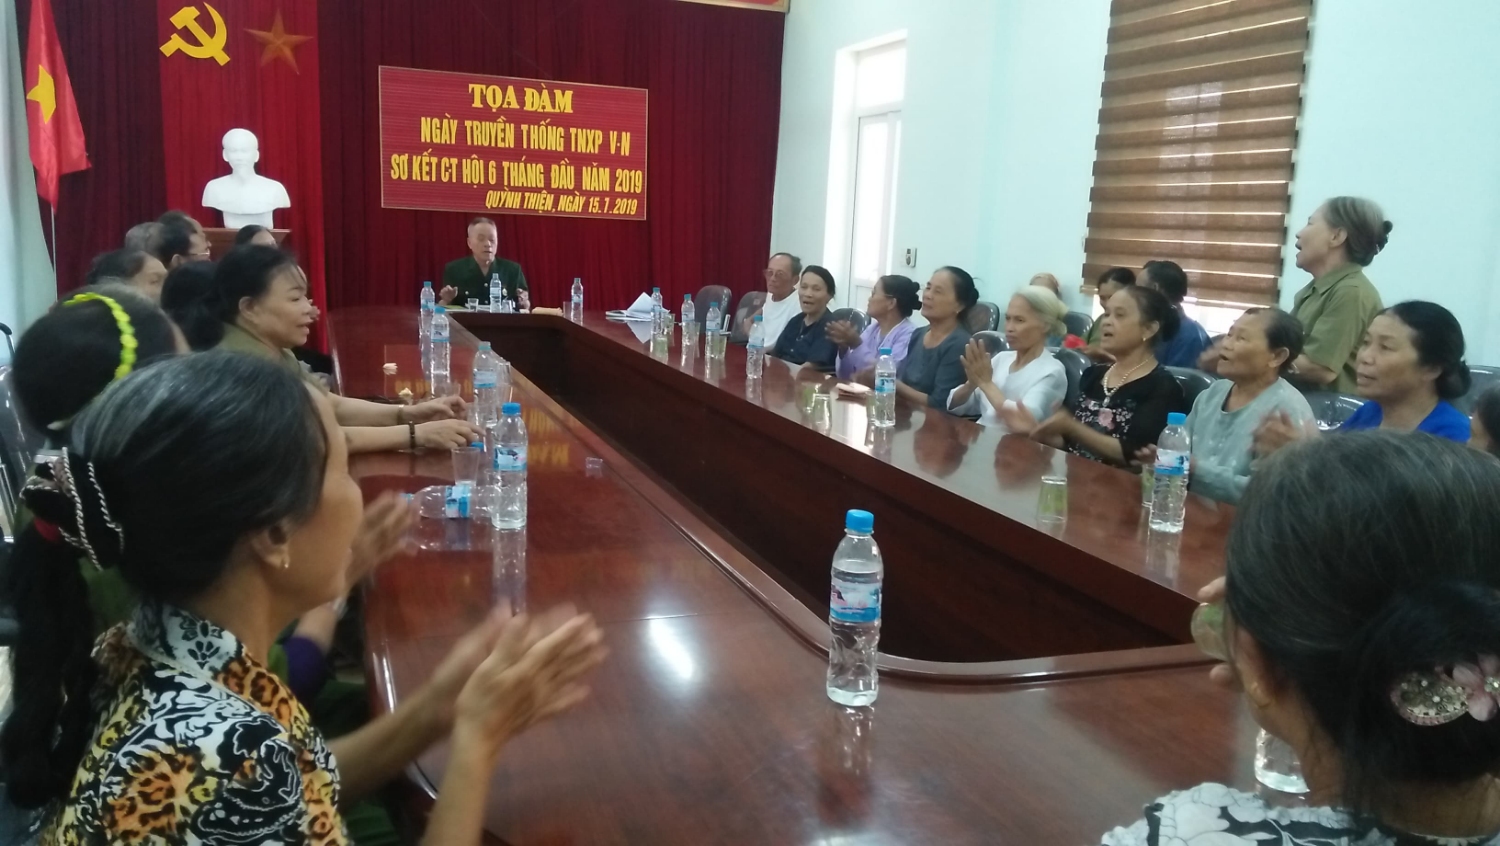 Hội Cựu Thanh niên xung phong phường Quỳnh Thiện tổ chức tọa đàm ngày truyền thống lực lượng TNXP Việt nam và sơ kết hoạt động Hội 6 tháng đầu năm, triển khai nhiệm vụ 6 tháng cuối năm 2019